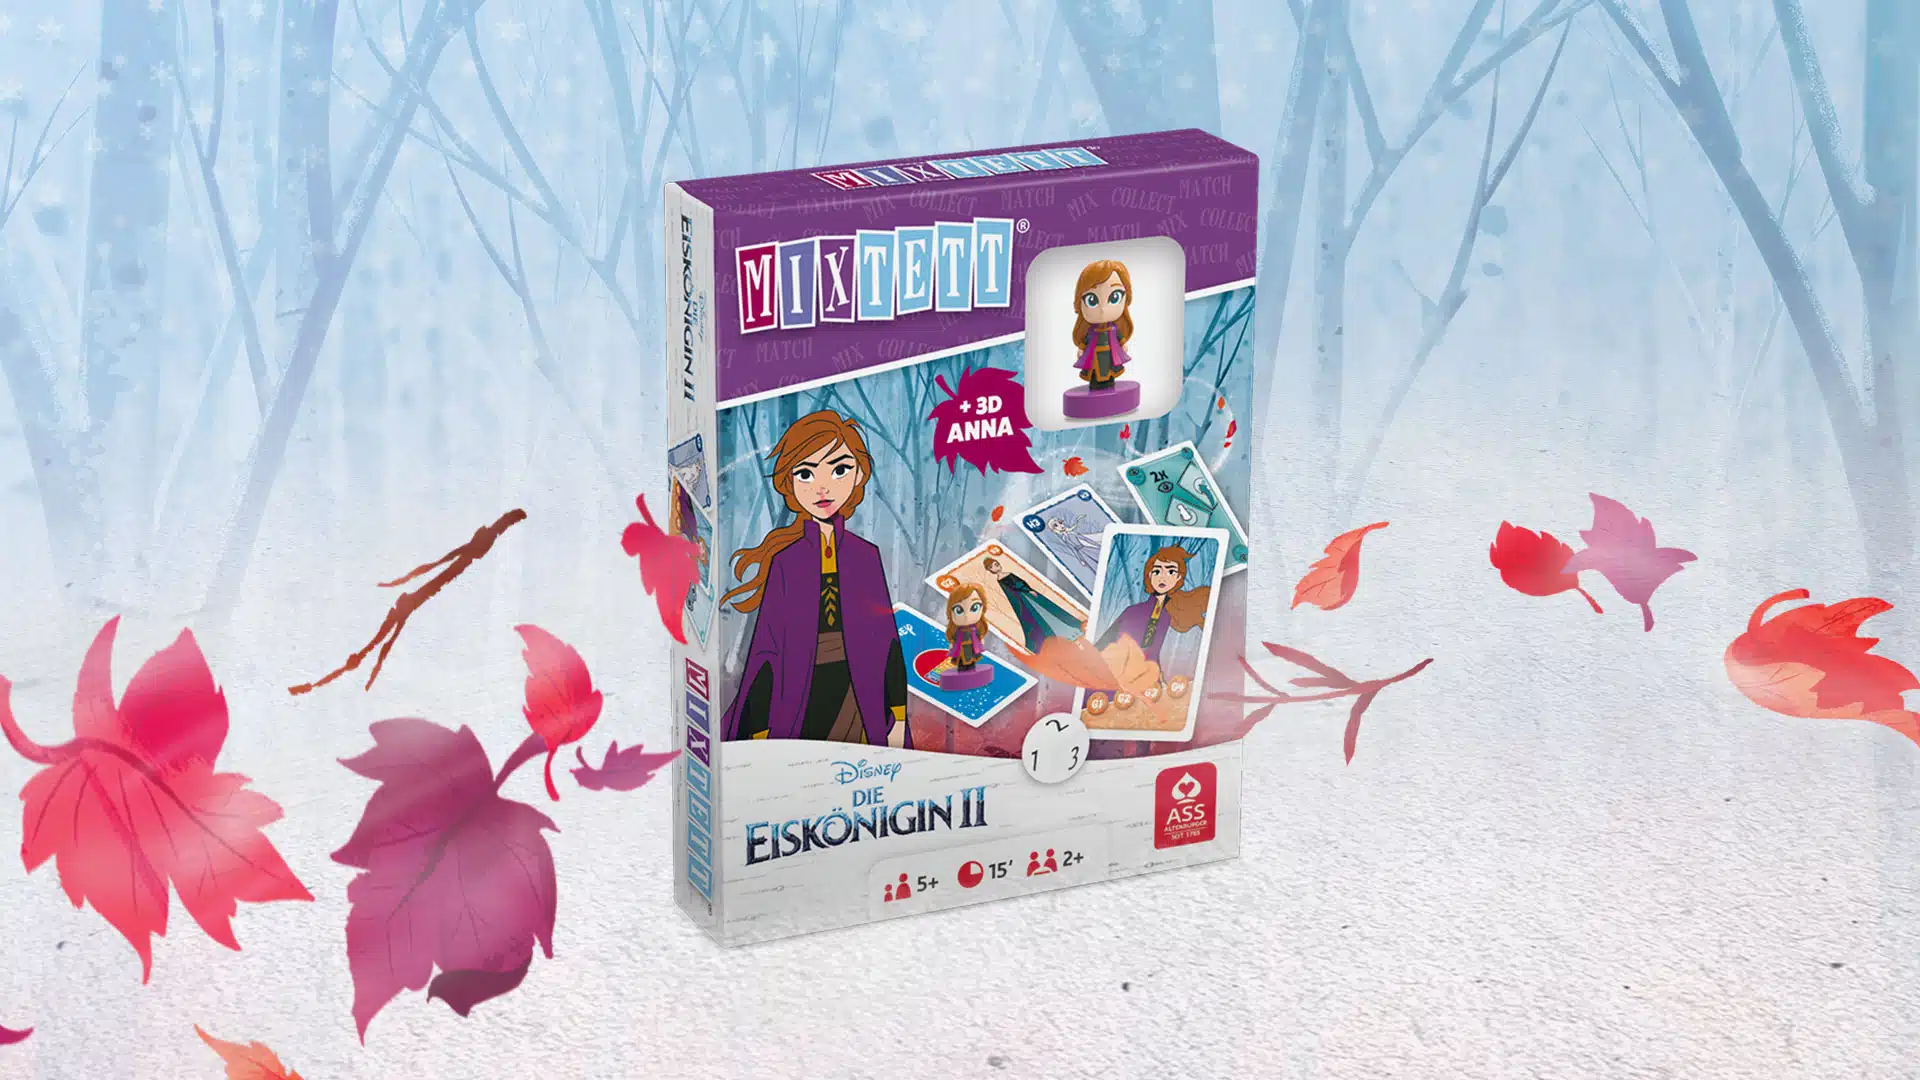 Das Disney Die Eiskoenigin 2 Mixtett Anna Spiel steht auf einem verschneitem Untergrund. Im Hintergrund ist ein verschneiter Wald zu erkennen, um das Spiel herum fliegen ein paar bunte Laubblätter im Wind.